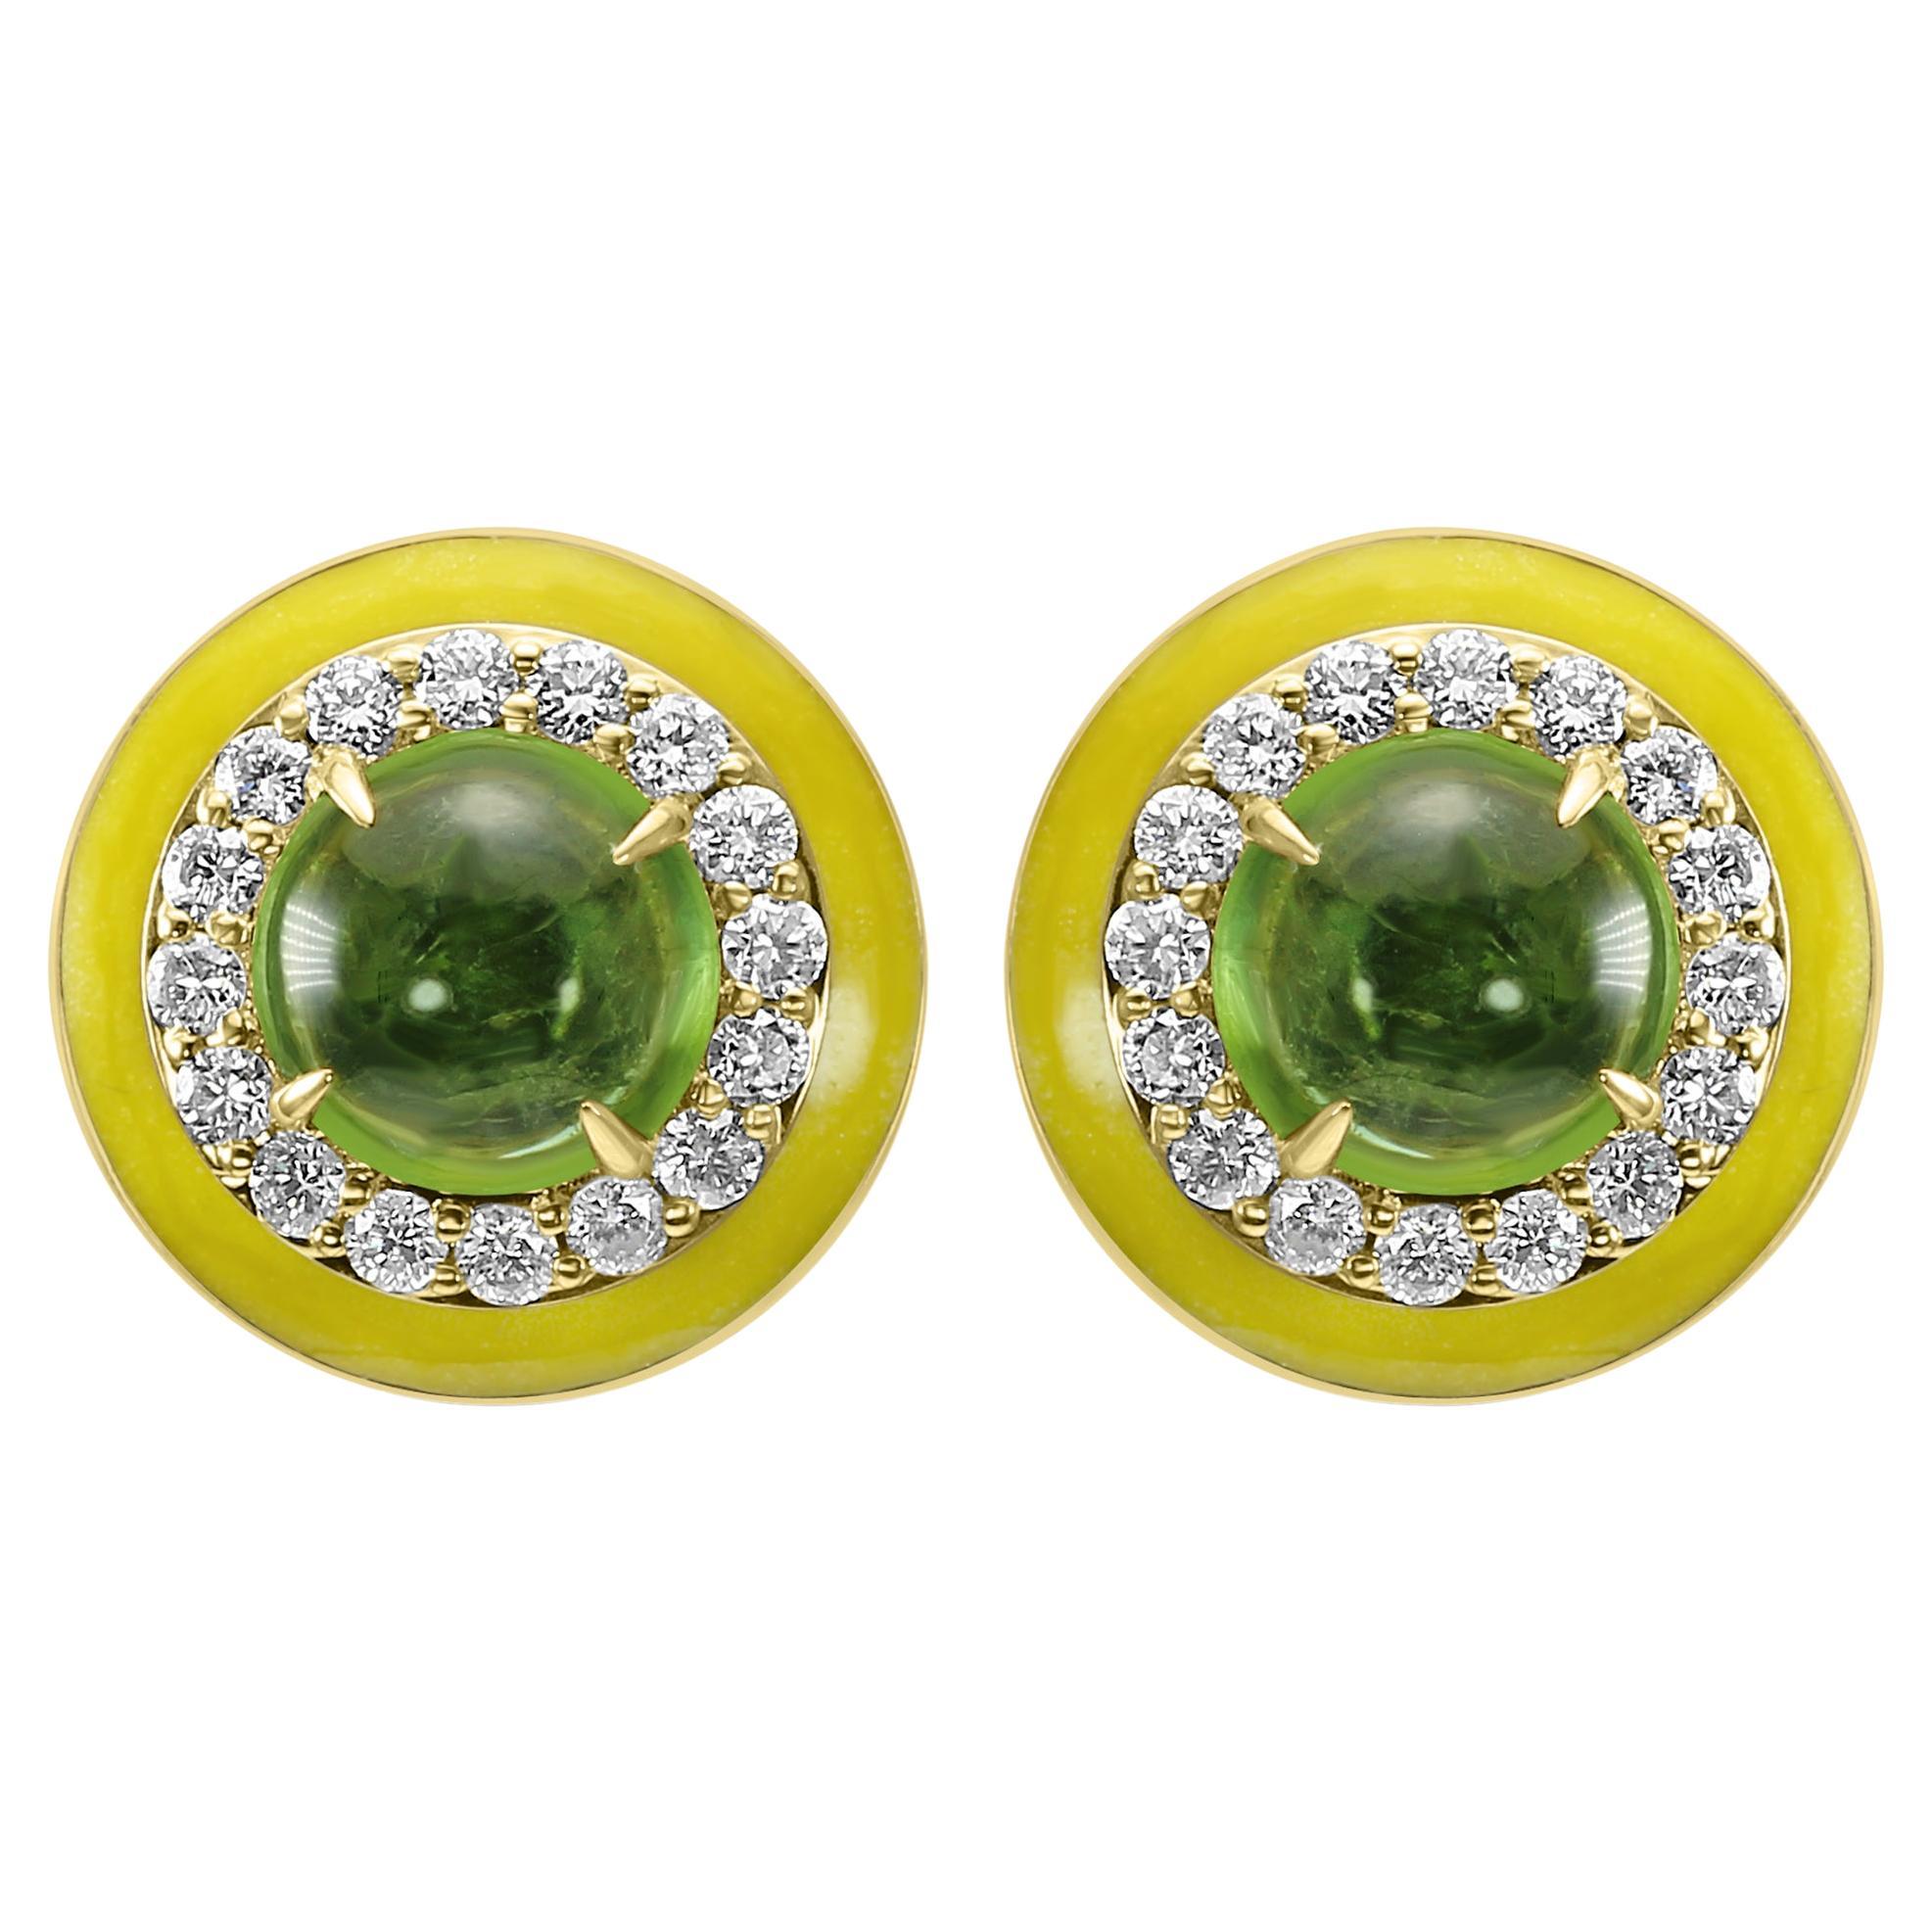 Boucles d'oreilles mode en or jaune avec tourmaline verte, diamant rond, émail jaune et halo de diamants